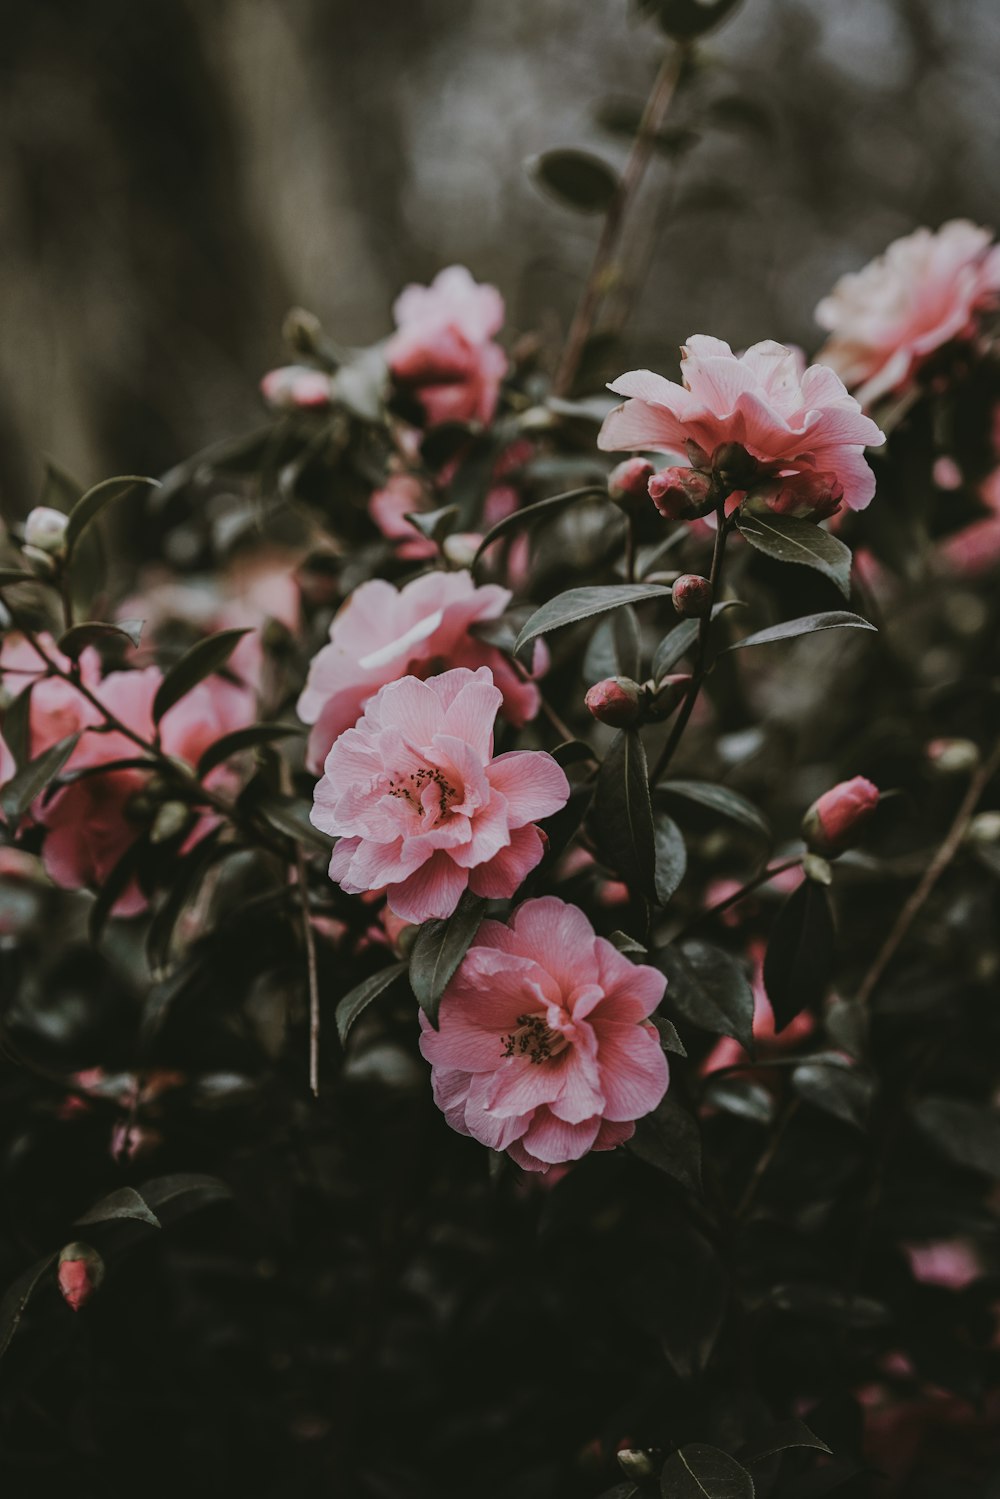 Fotografia tilt shift di fiori dai petali rosa